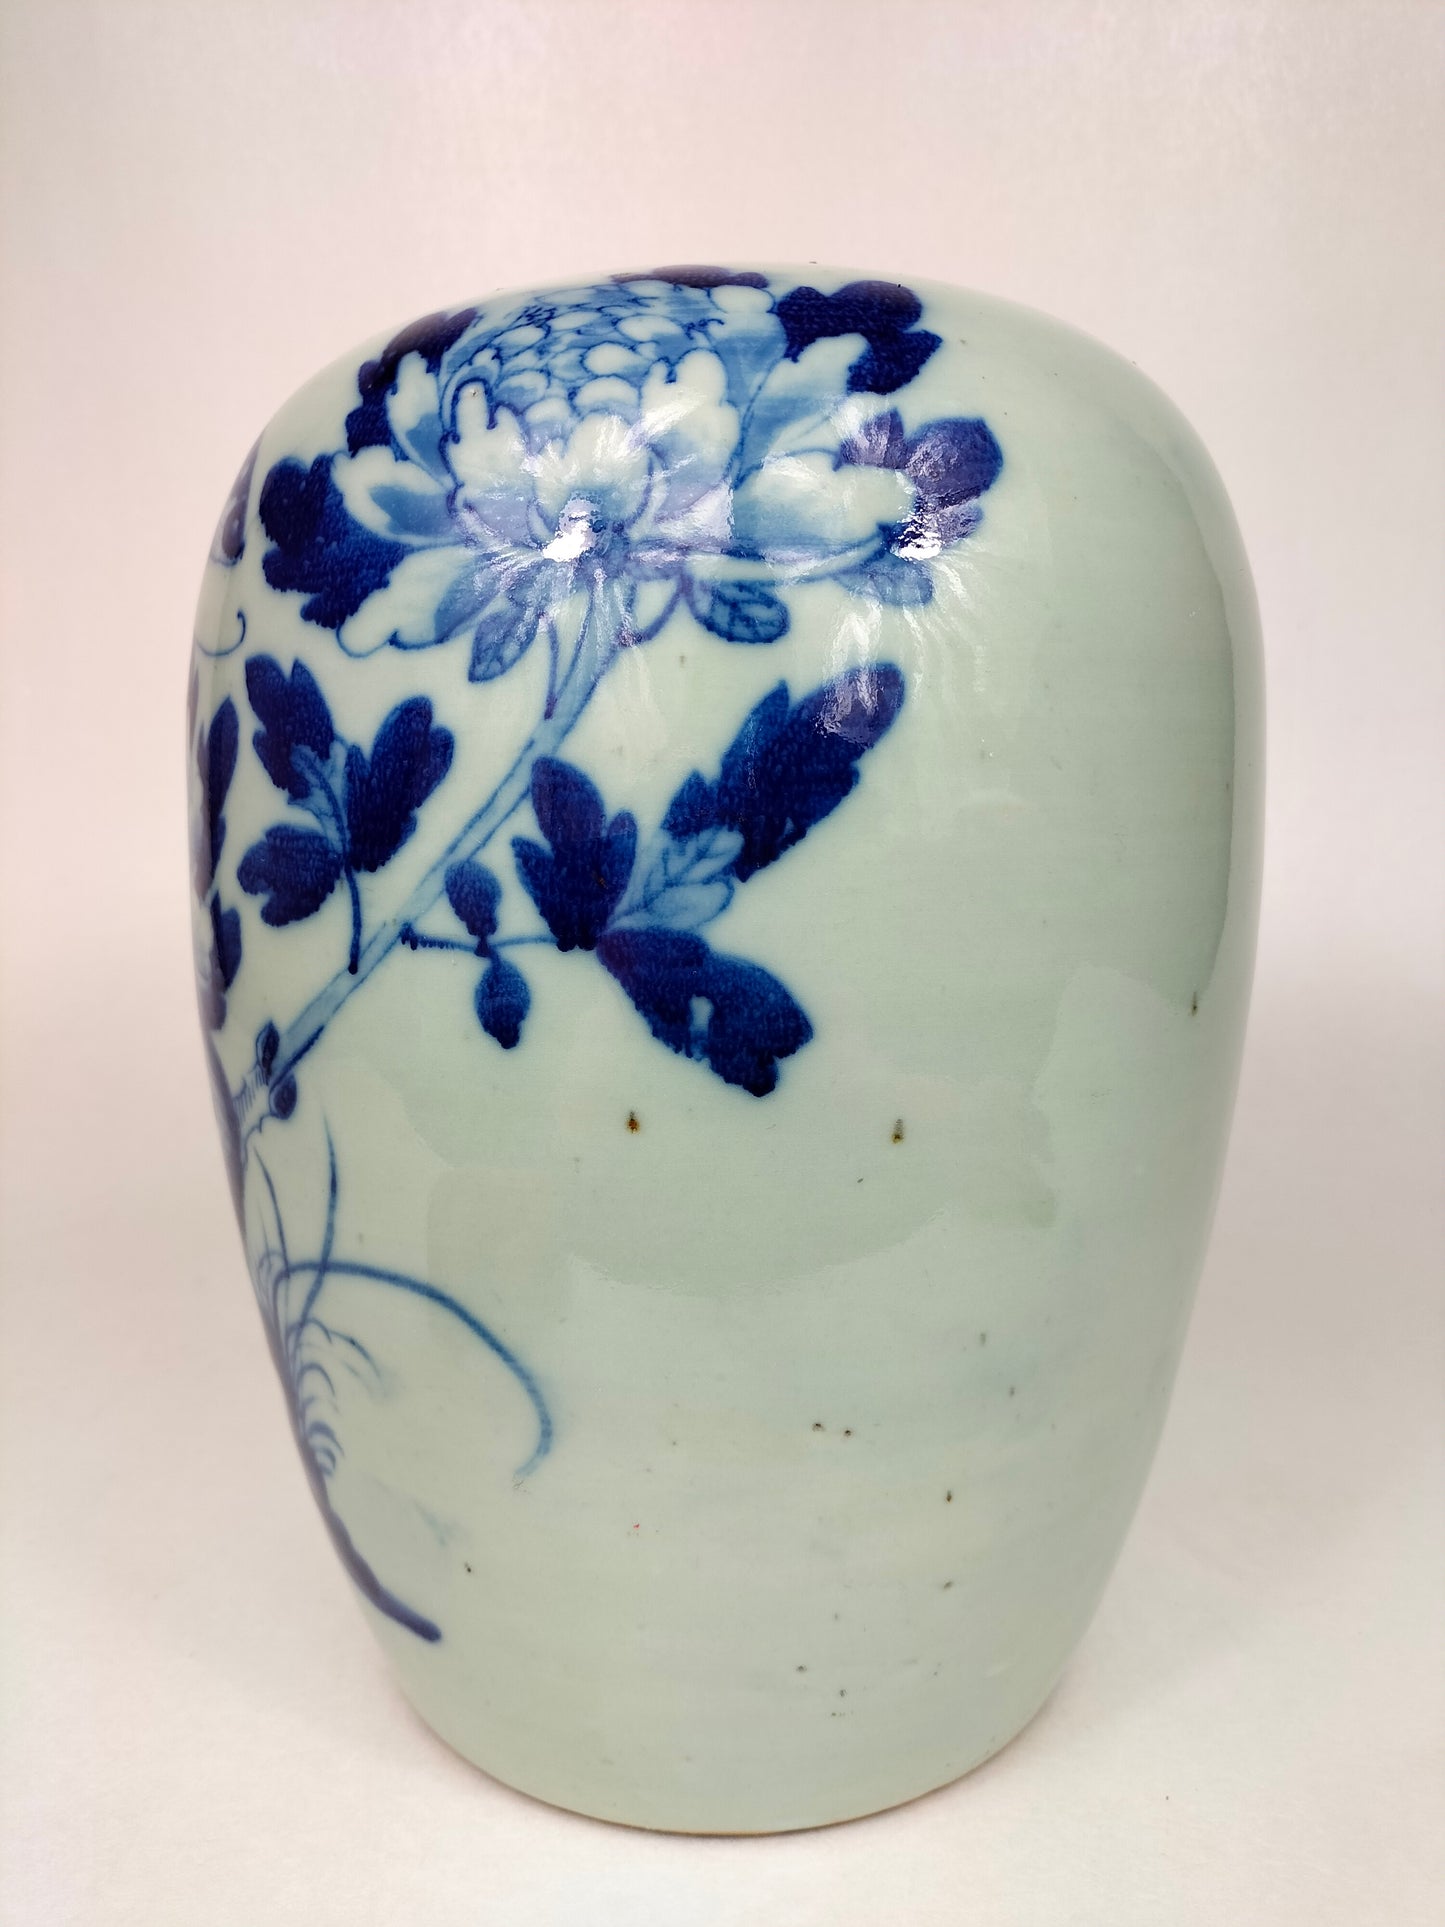 装饰有蝴蝶和花朵的古董中国青瓷彩色姜缸 // 清代 - 19 世纪